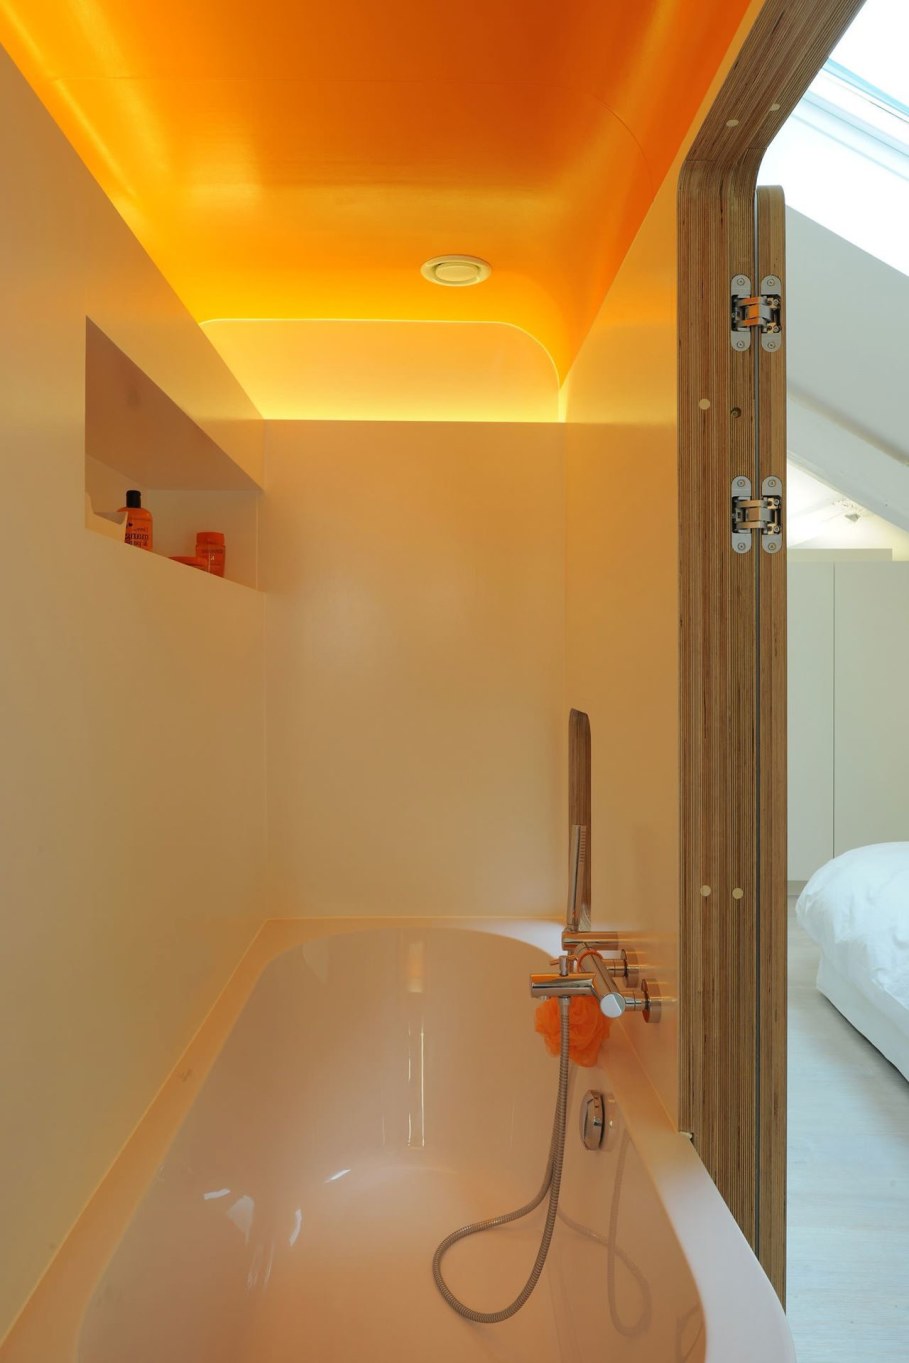 Creative Apartment Design from Dethier Architectures - Orange Bathroom 2